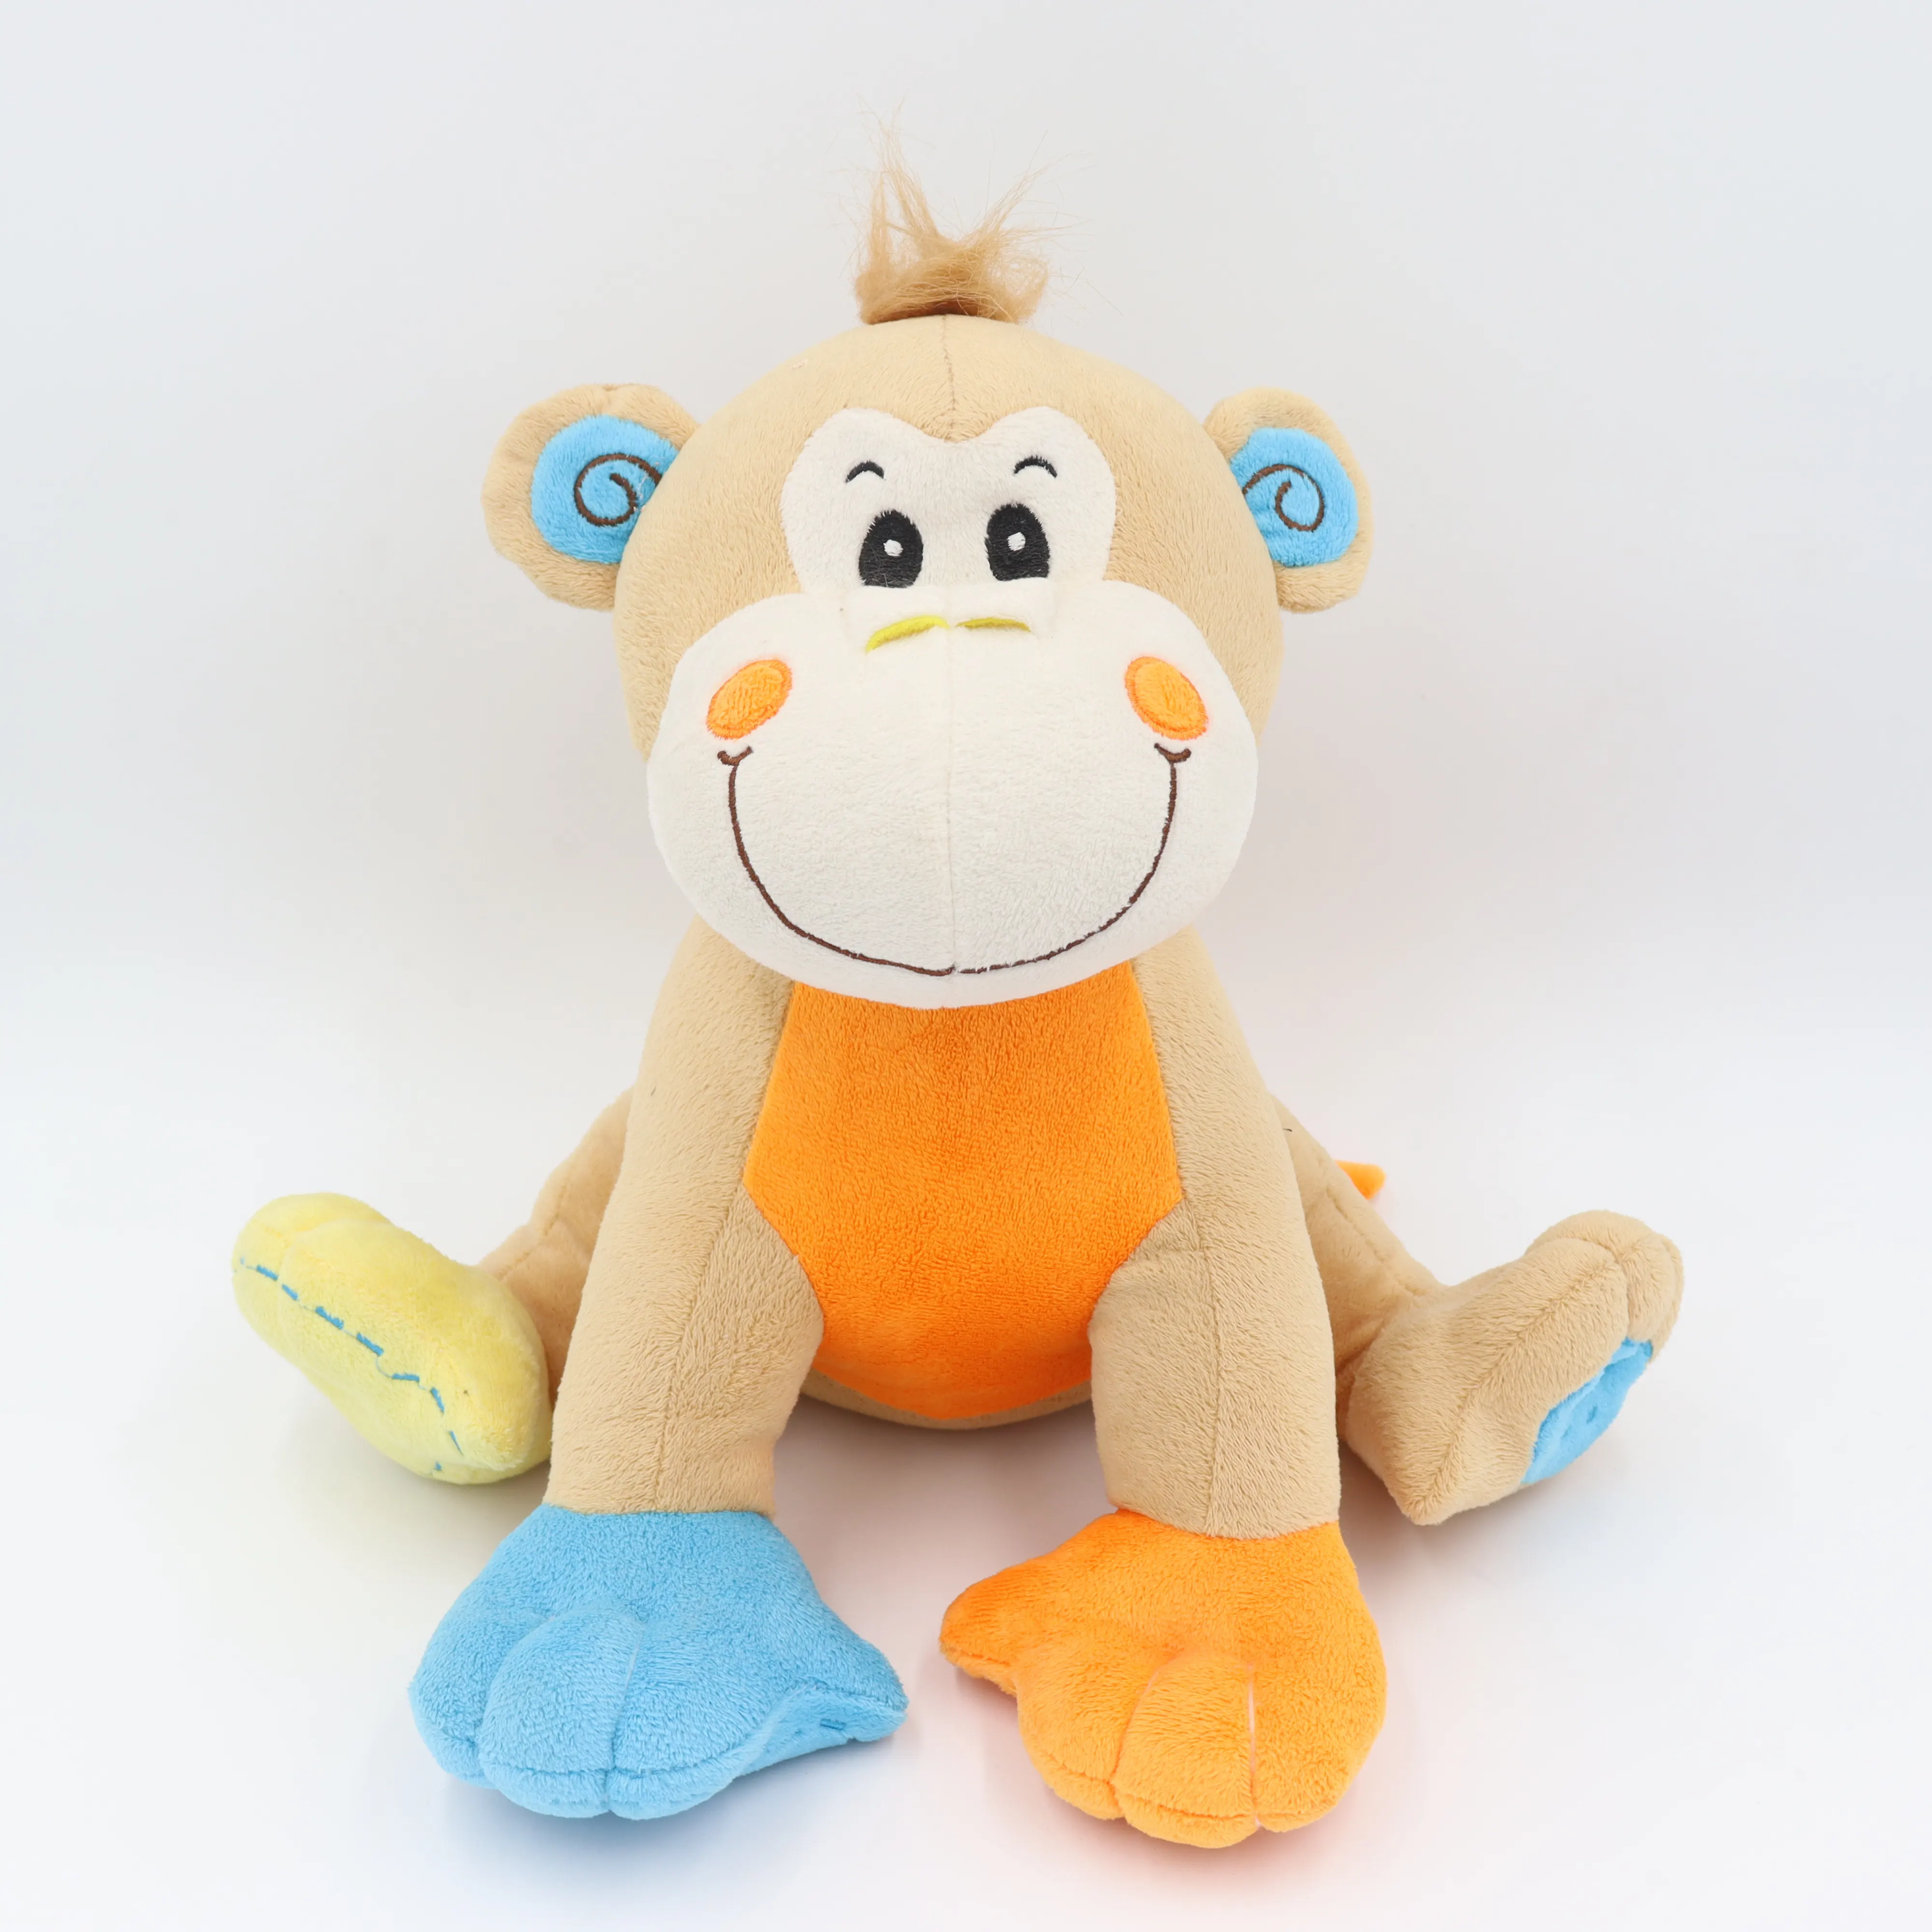 JM106985 jouets en peluche de dessin animé en Design cerf, Lion et singe